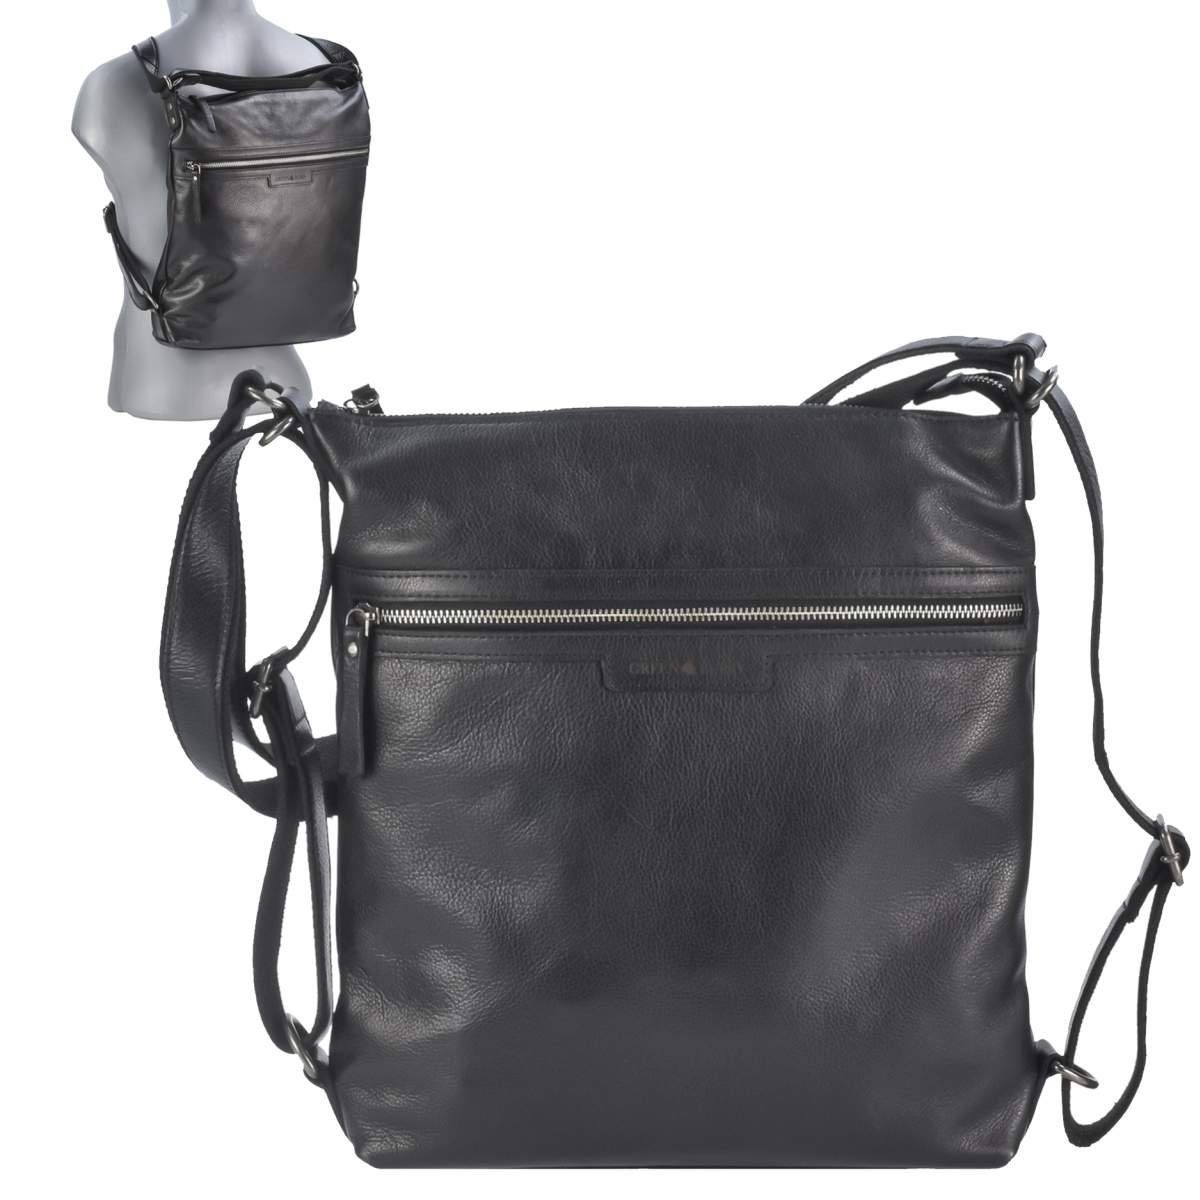 Greenburry Umhängetasche Soft Washed, Schultertasche 31x34cm mit 2in1 Funktion, als Tasche oder Rucksack zu tragen black